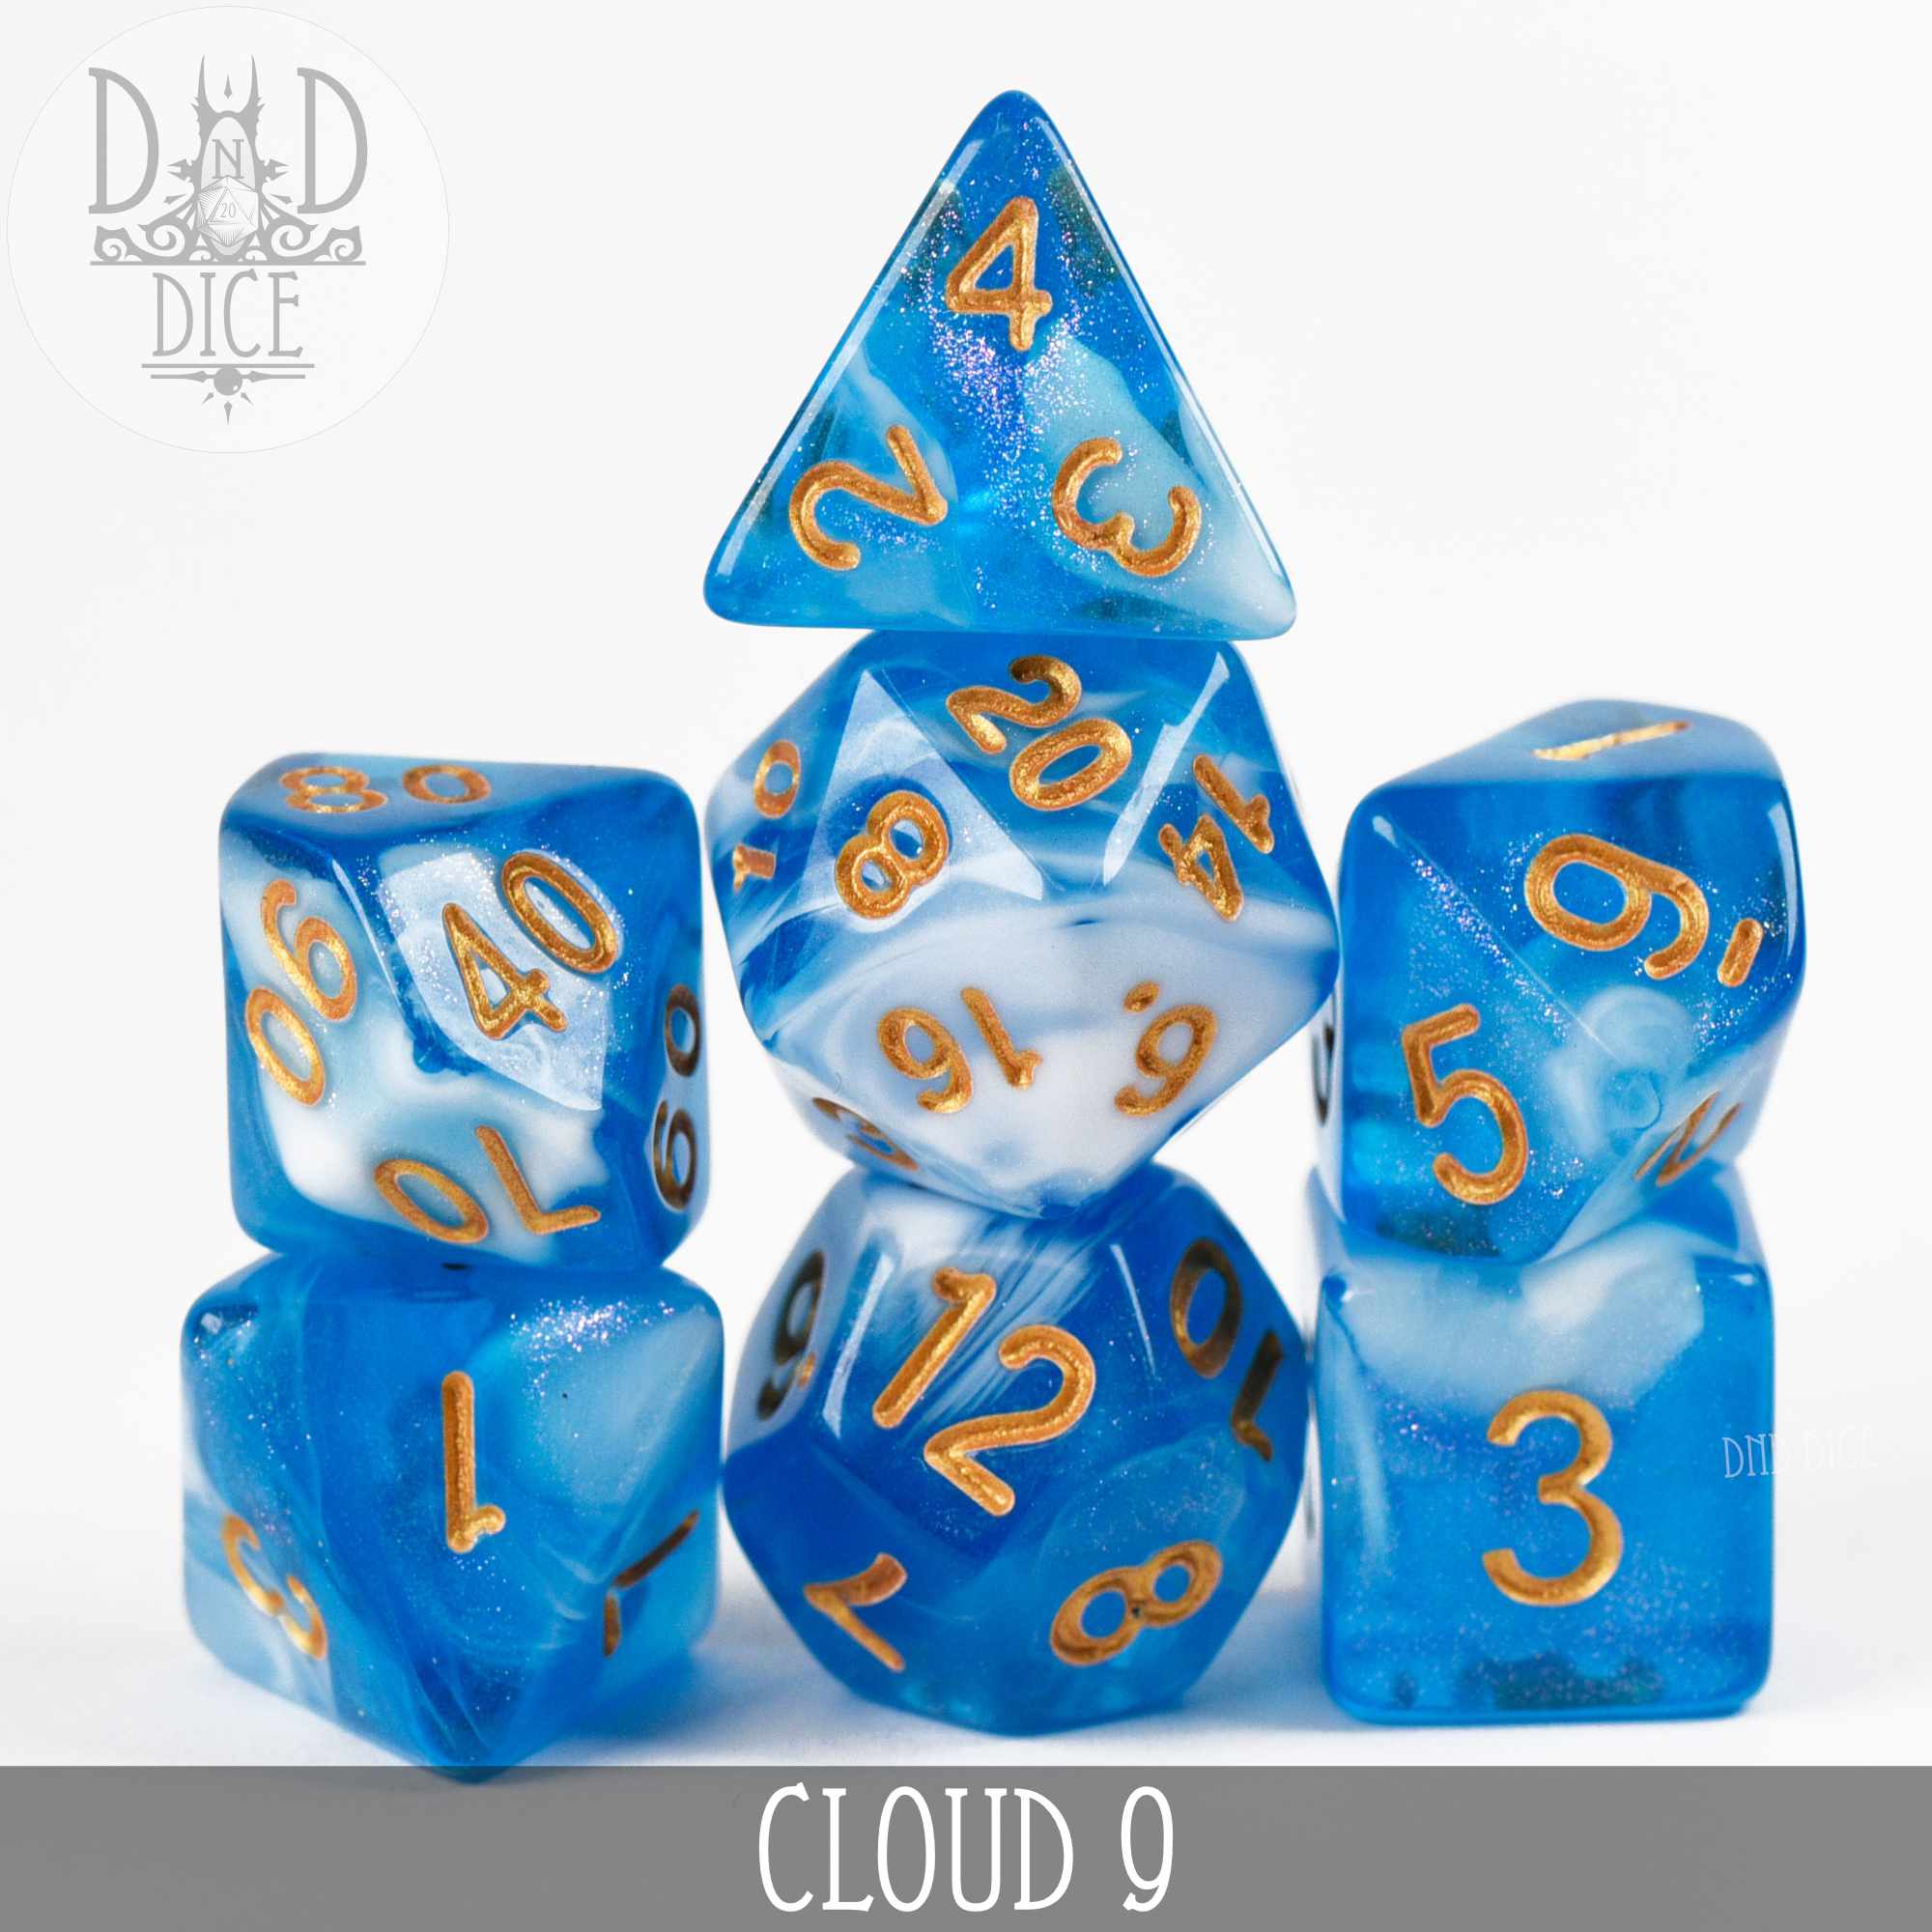 Cloud 9 Dice Set